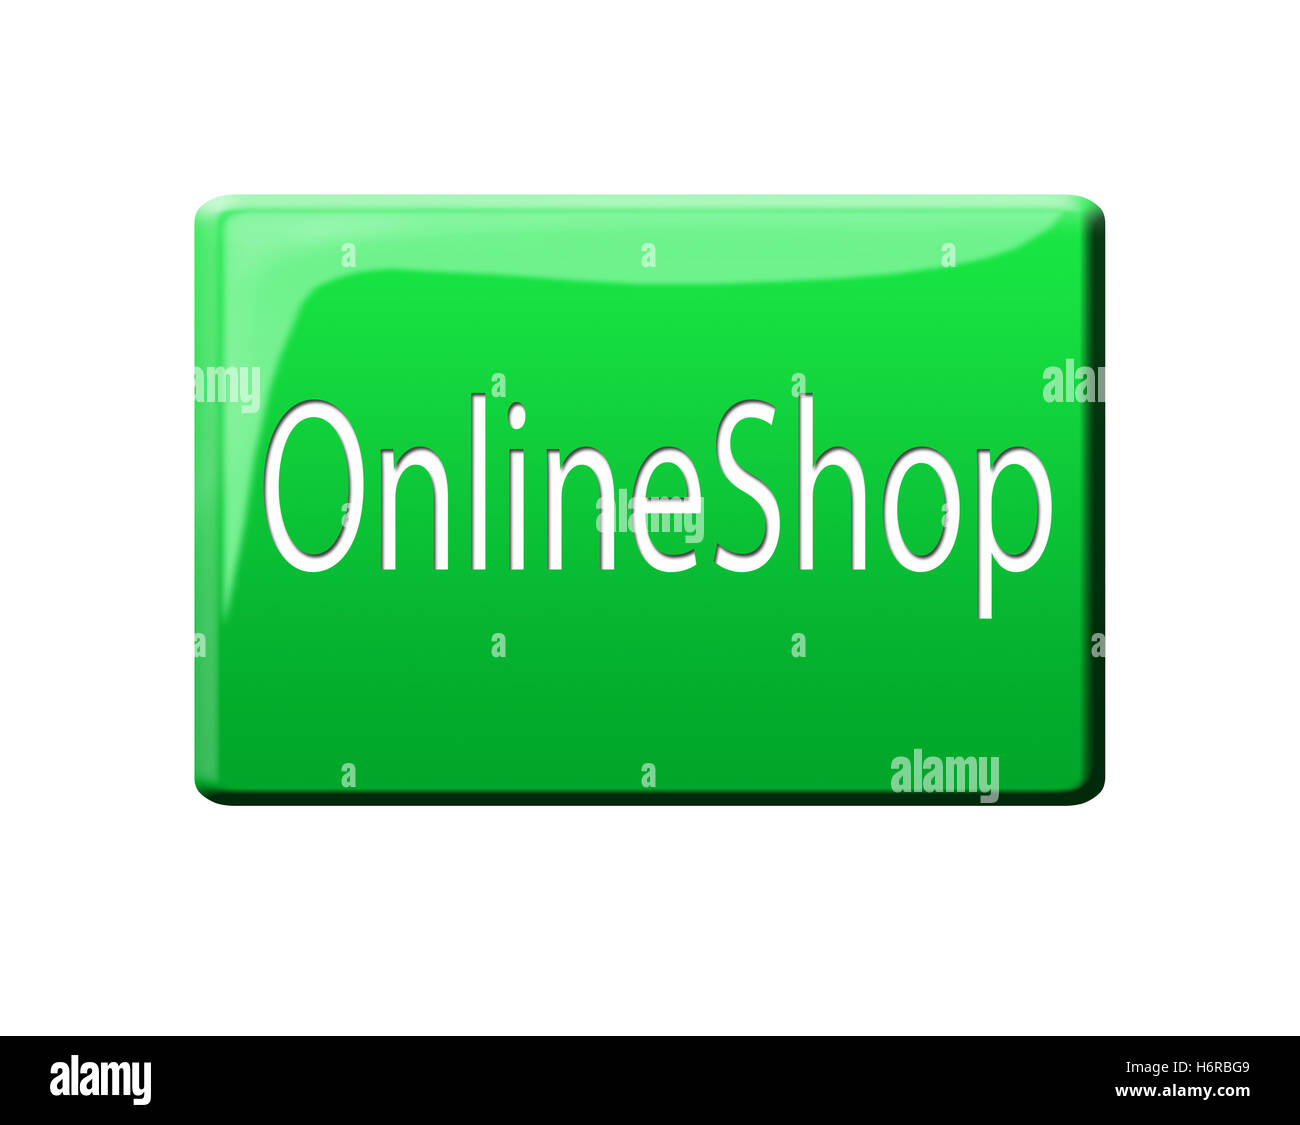 online shop button Stock Photo